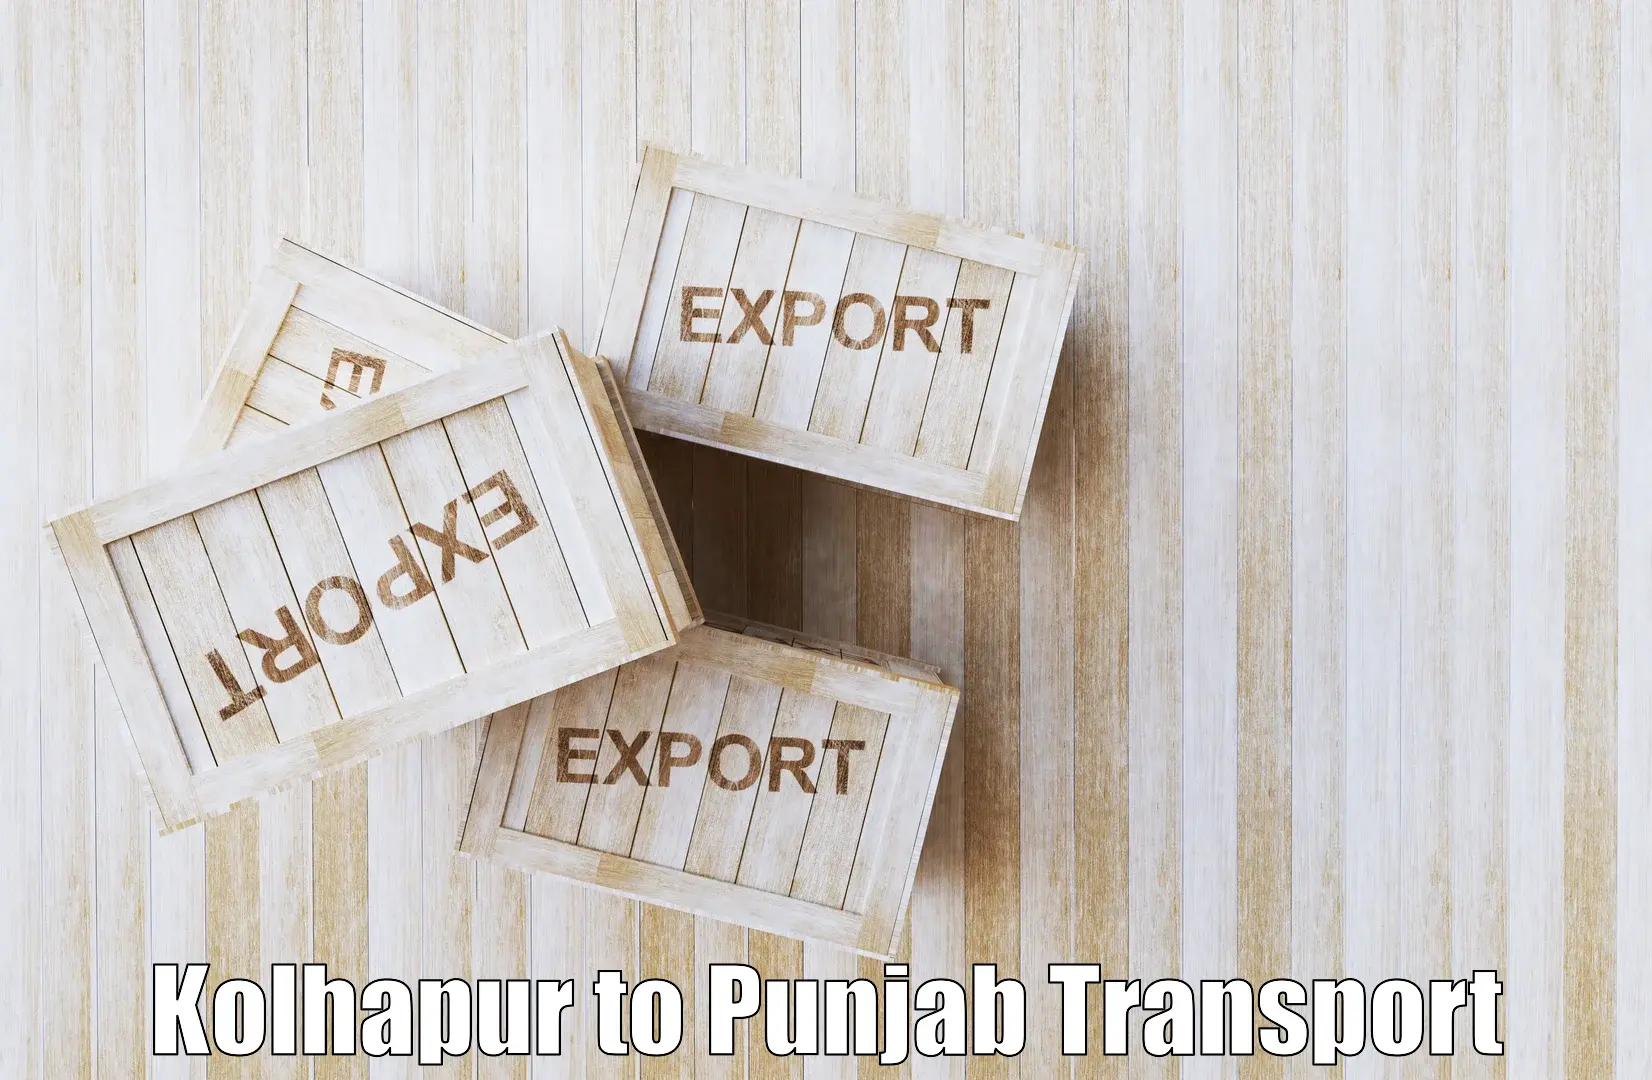 Intercity transport Kolhapur to Amritsar